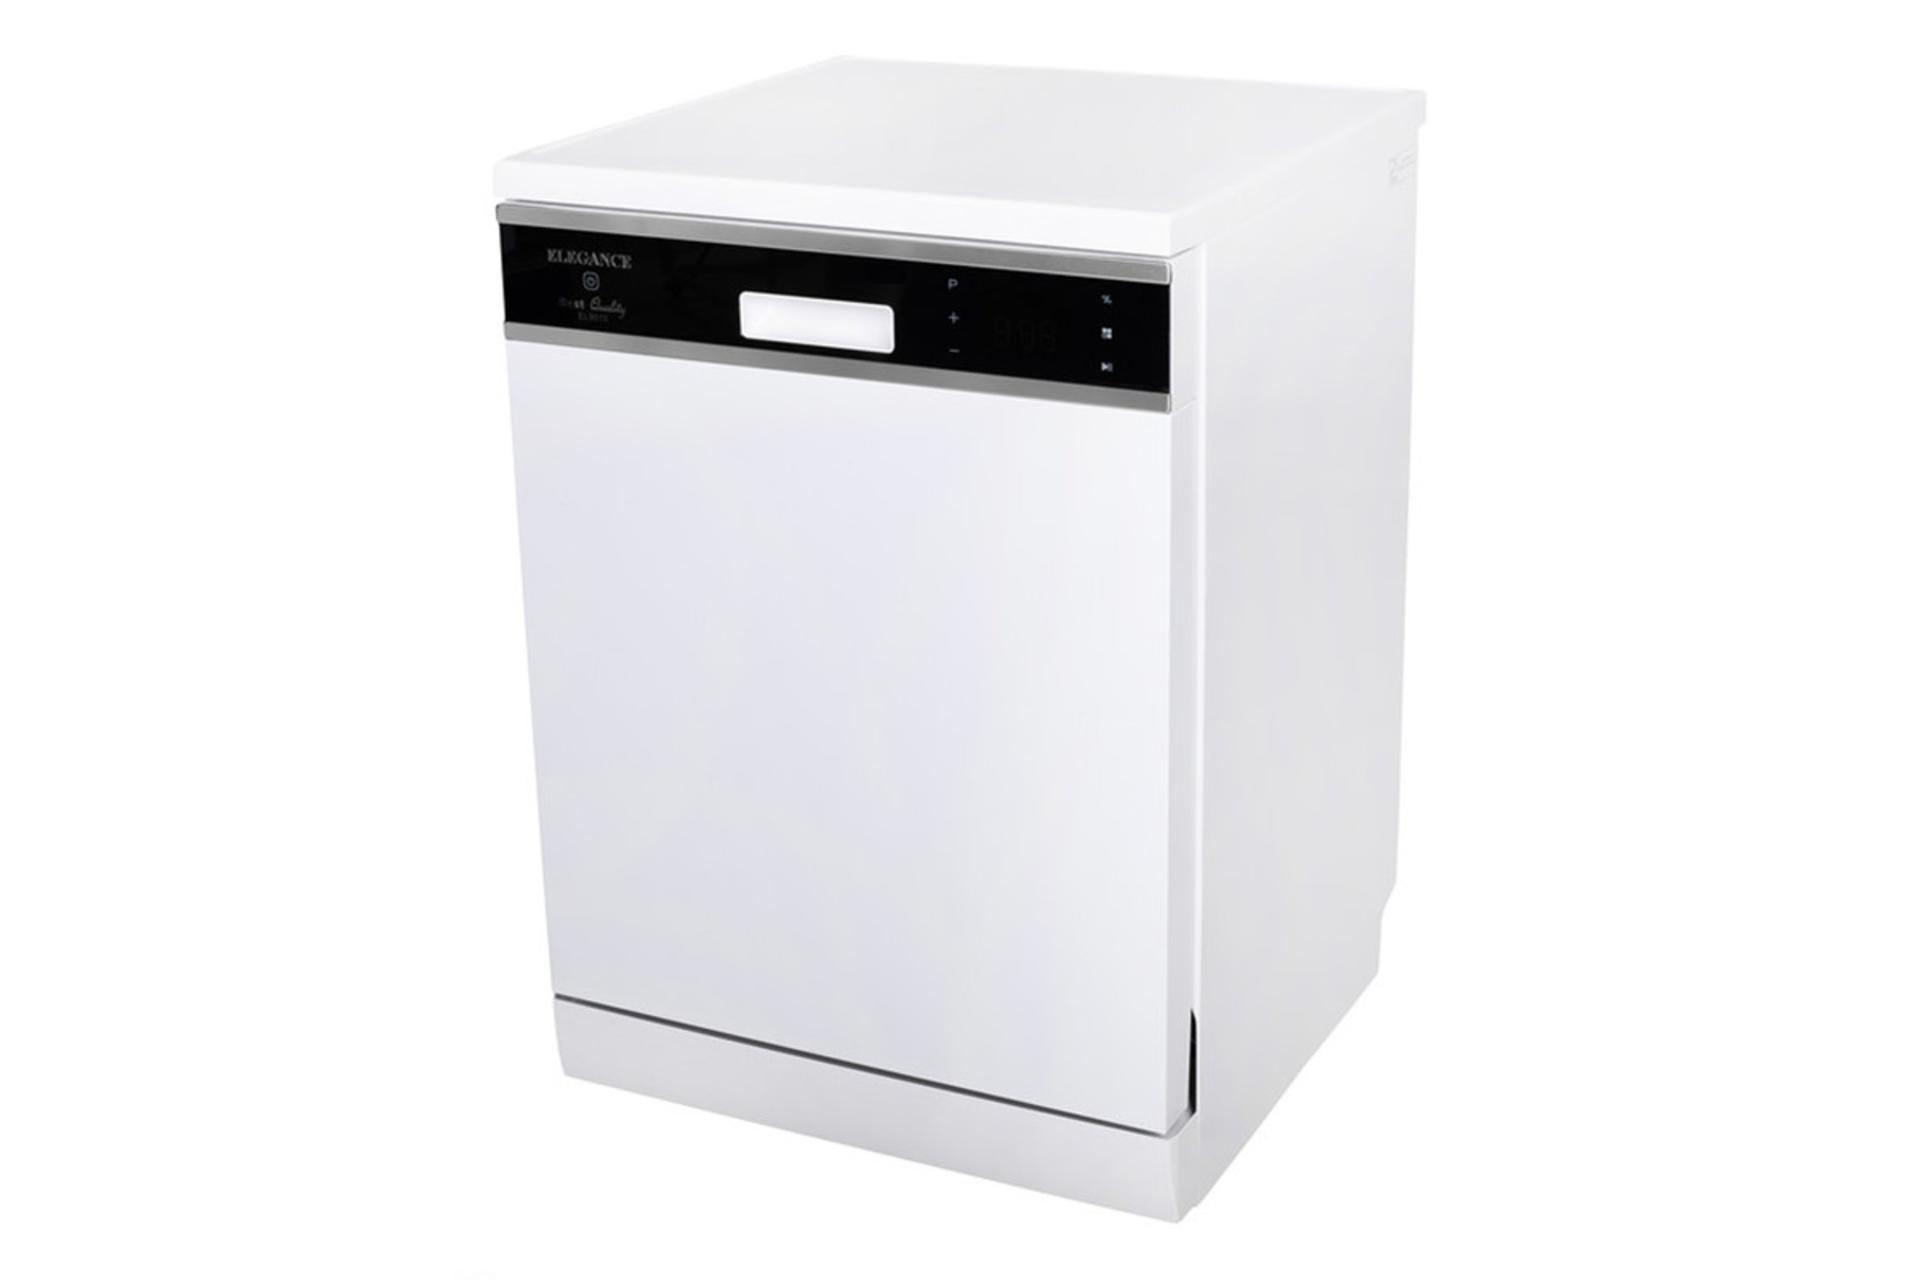 ماشین ظرفشویی الگانس Elegance EL9016 نمای جلو و راست رنگ سفید